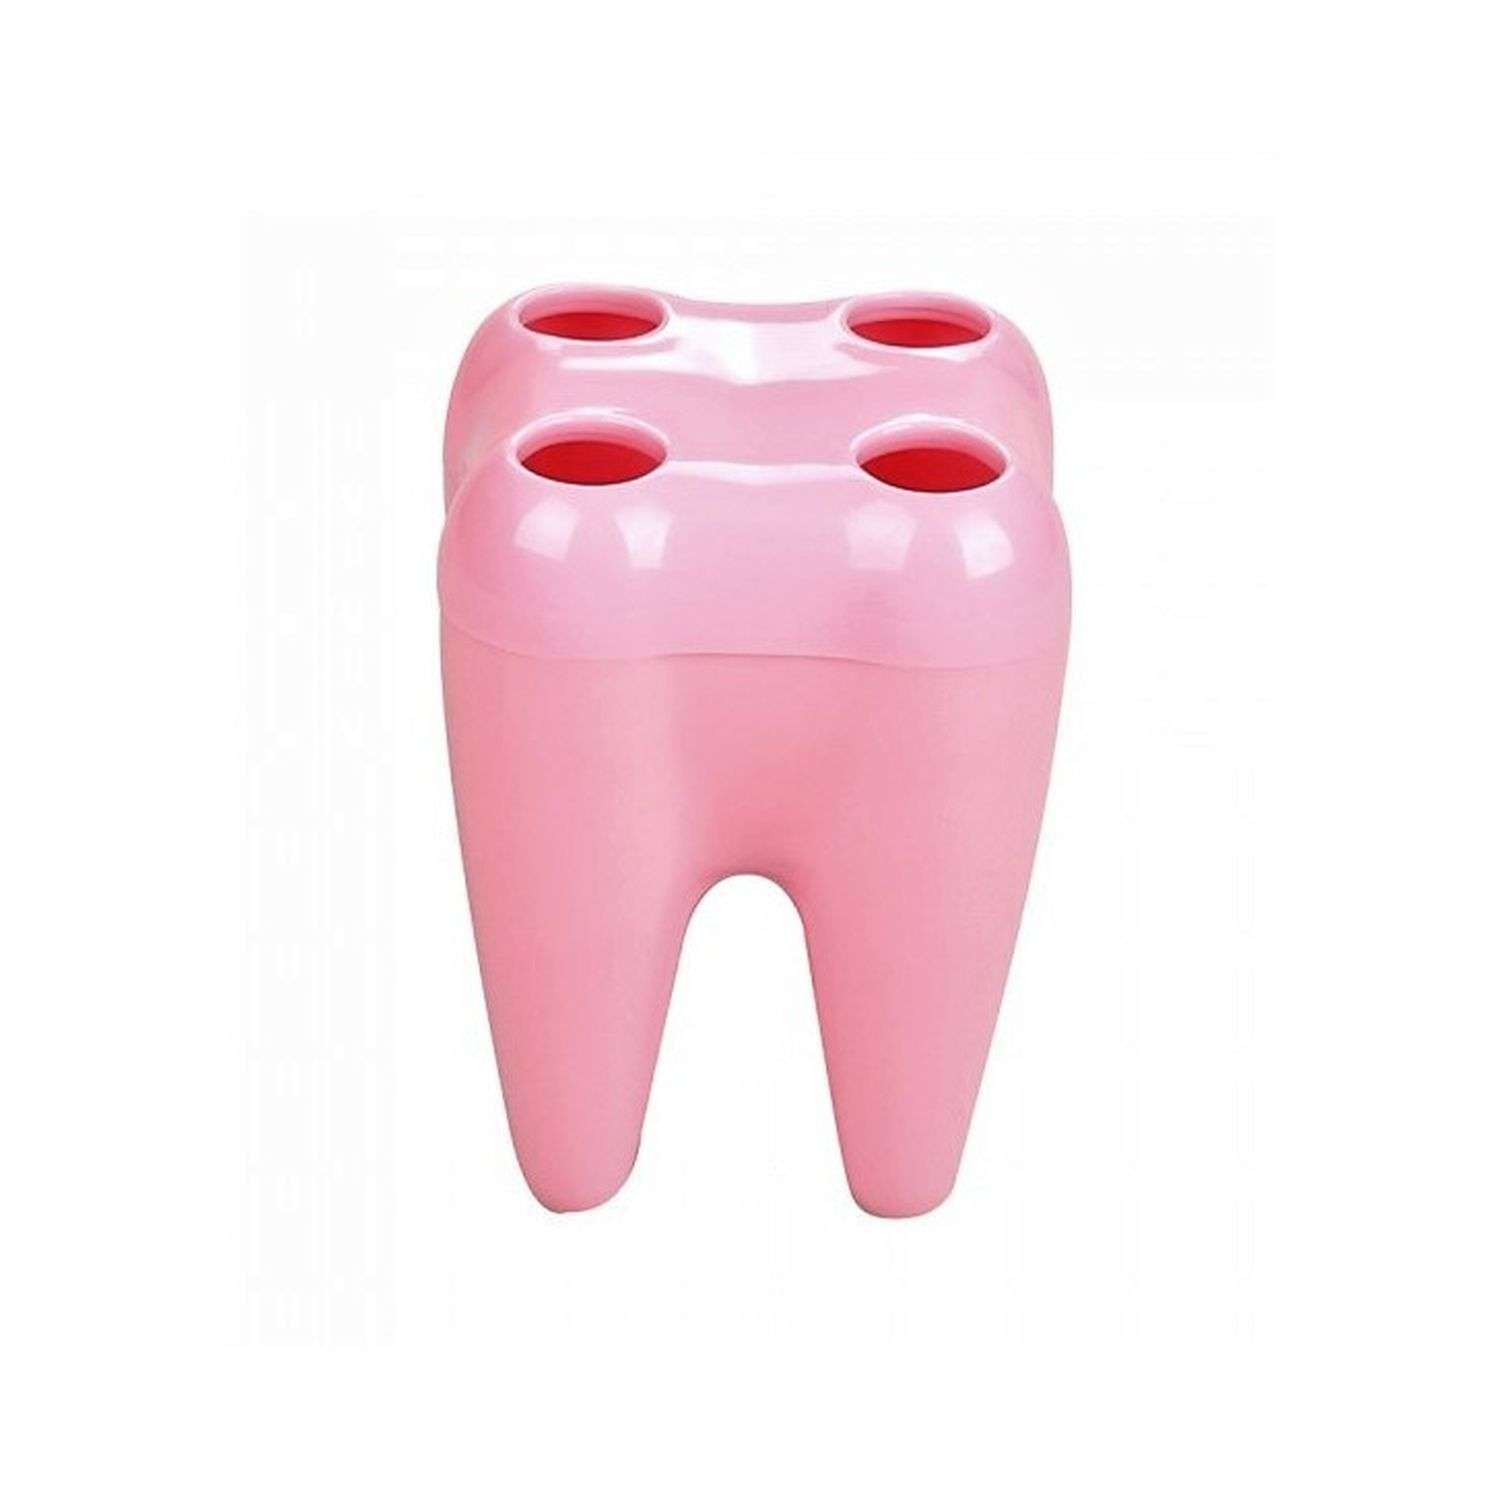 Стакан для зубных щеток Uniglodis розовый - фото 1